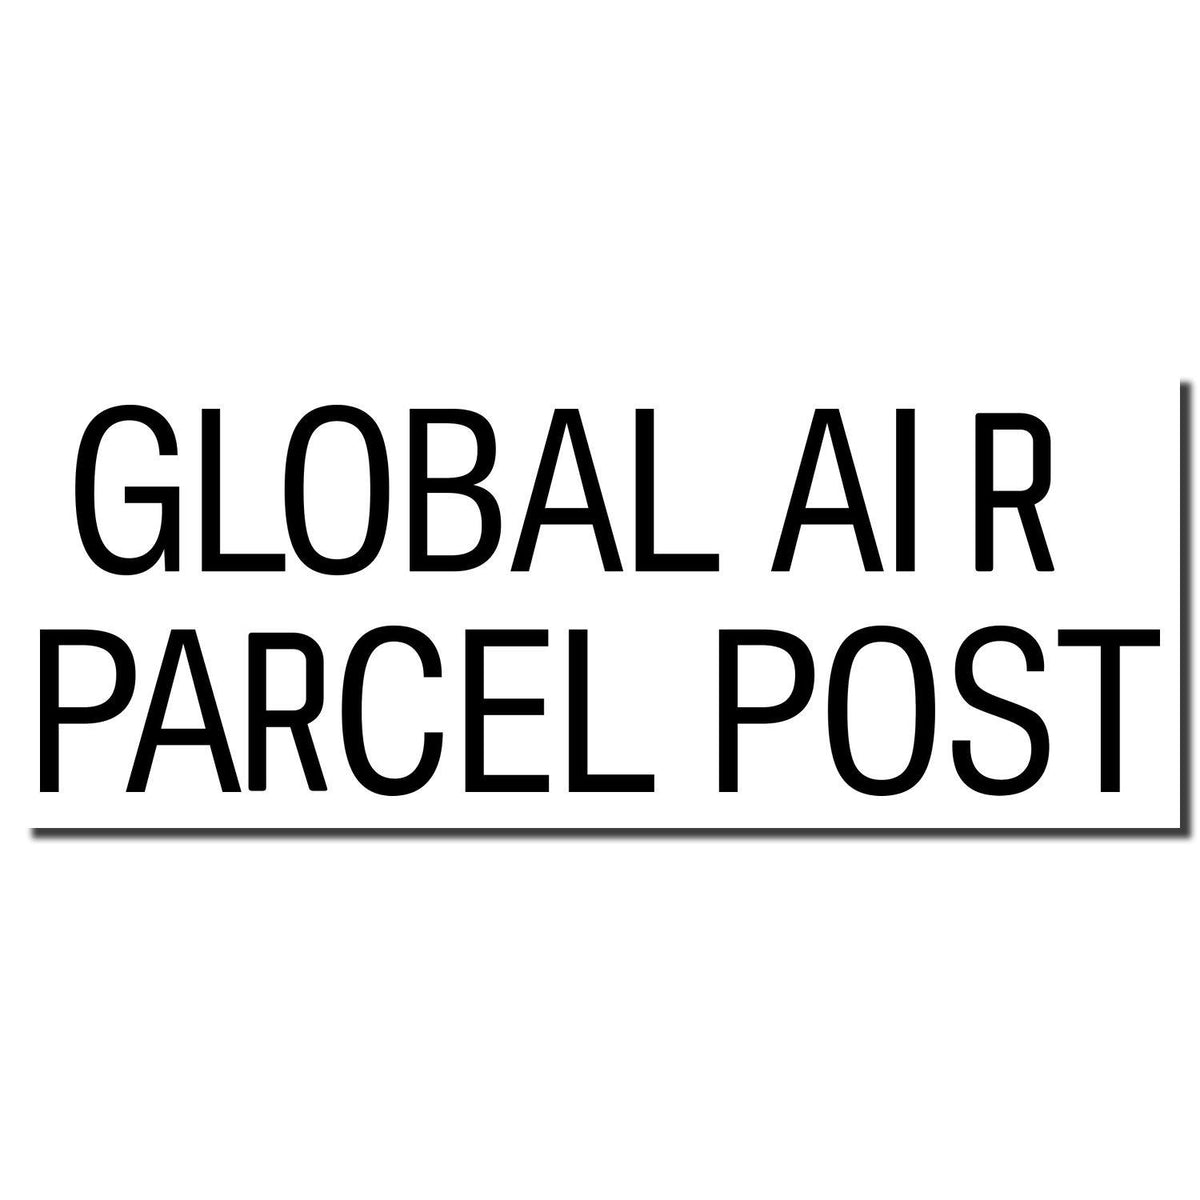 Enlarged Imprint Global Air Parcel Post Rubber Stamp Sample